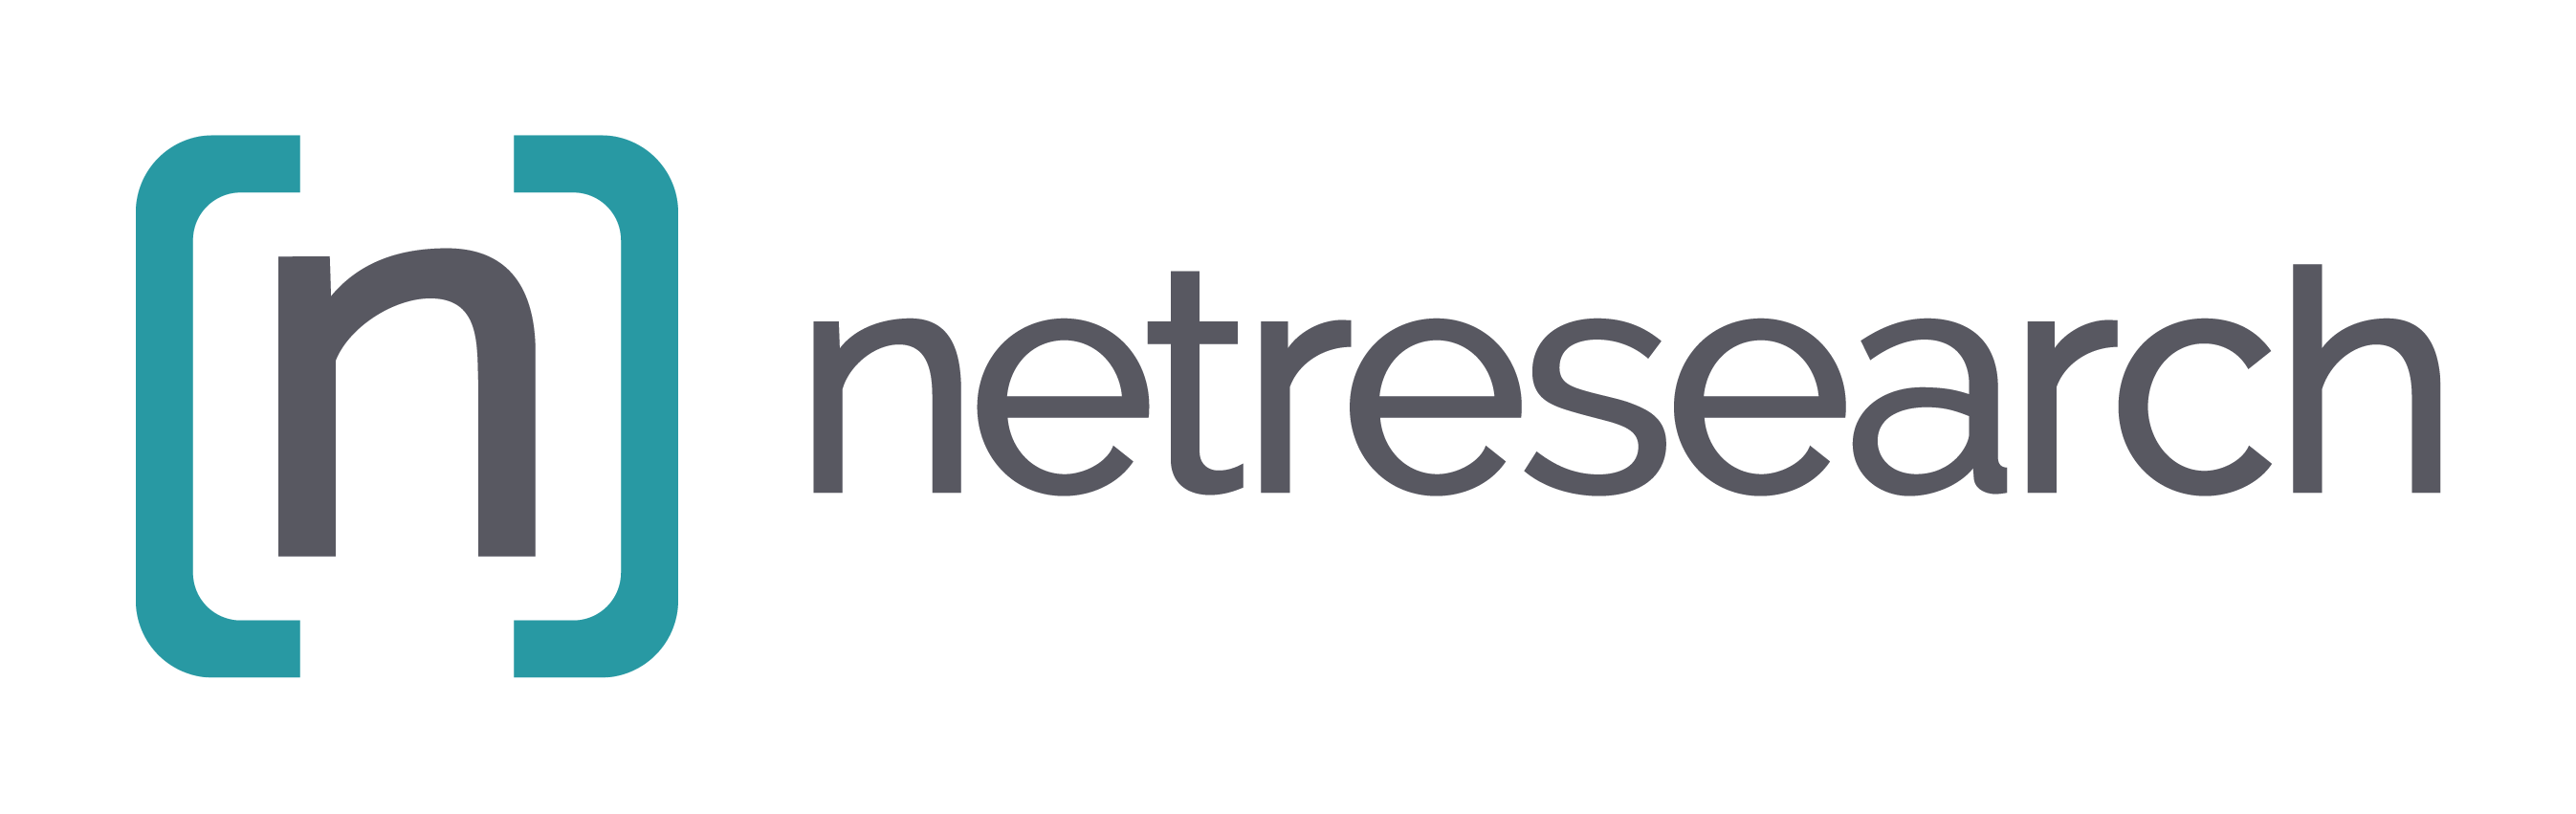 netresearch logo